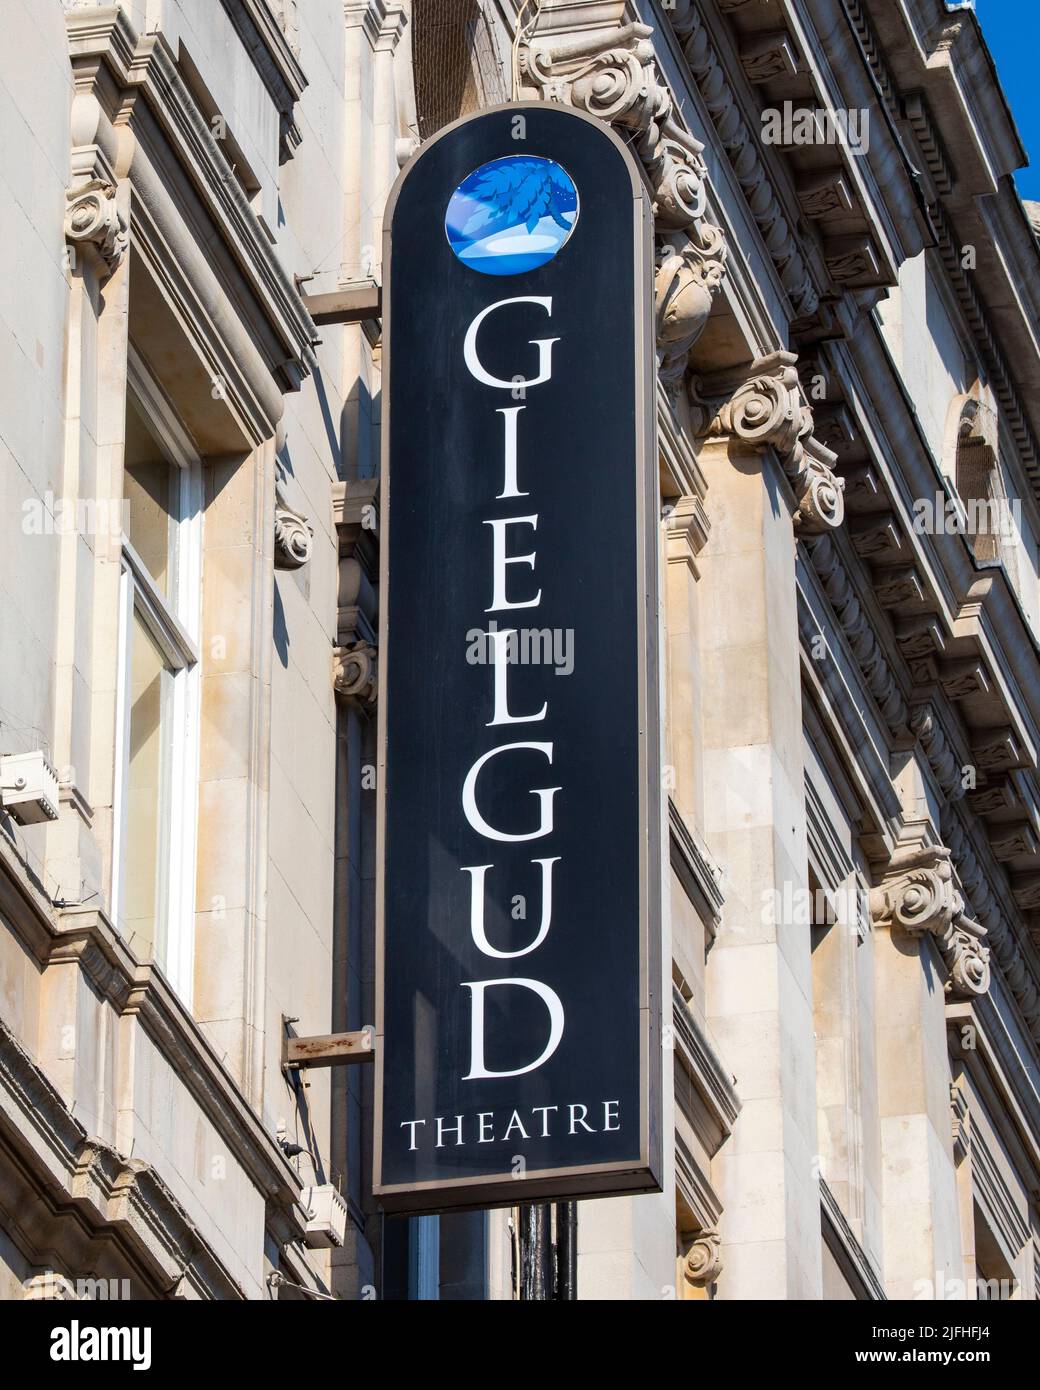 Londres, Royaume-Uni - 8 mars 2022 : le théâtre historique Gielgud, situé sur l'avenue Shaftesbury à Londres, Royaume-Uni. Banque D'Images